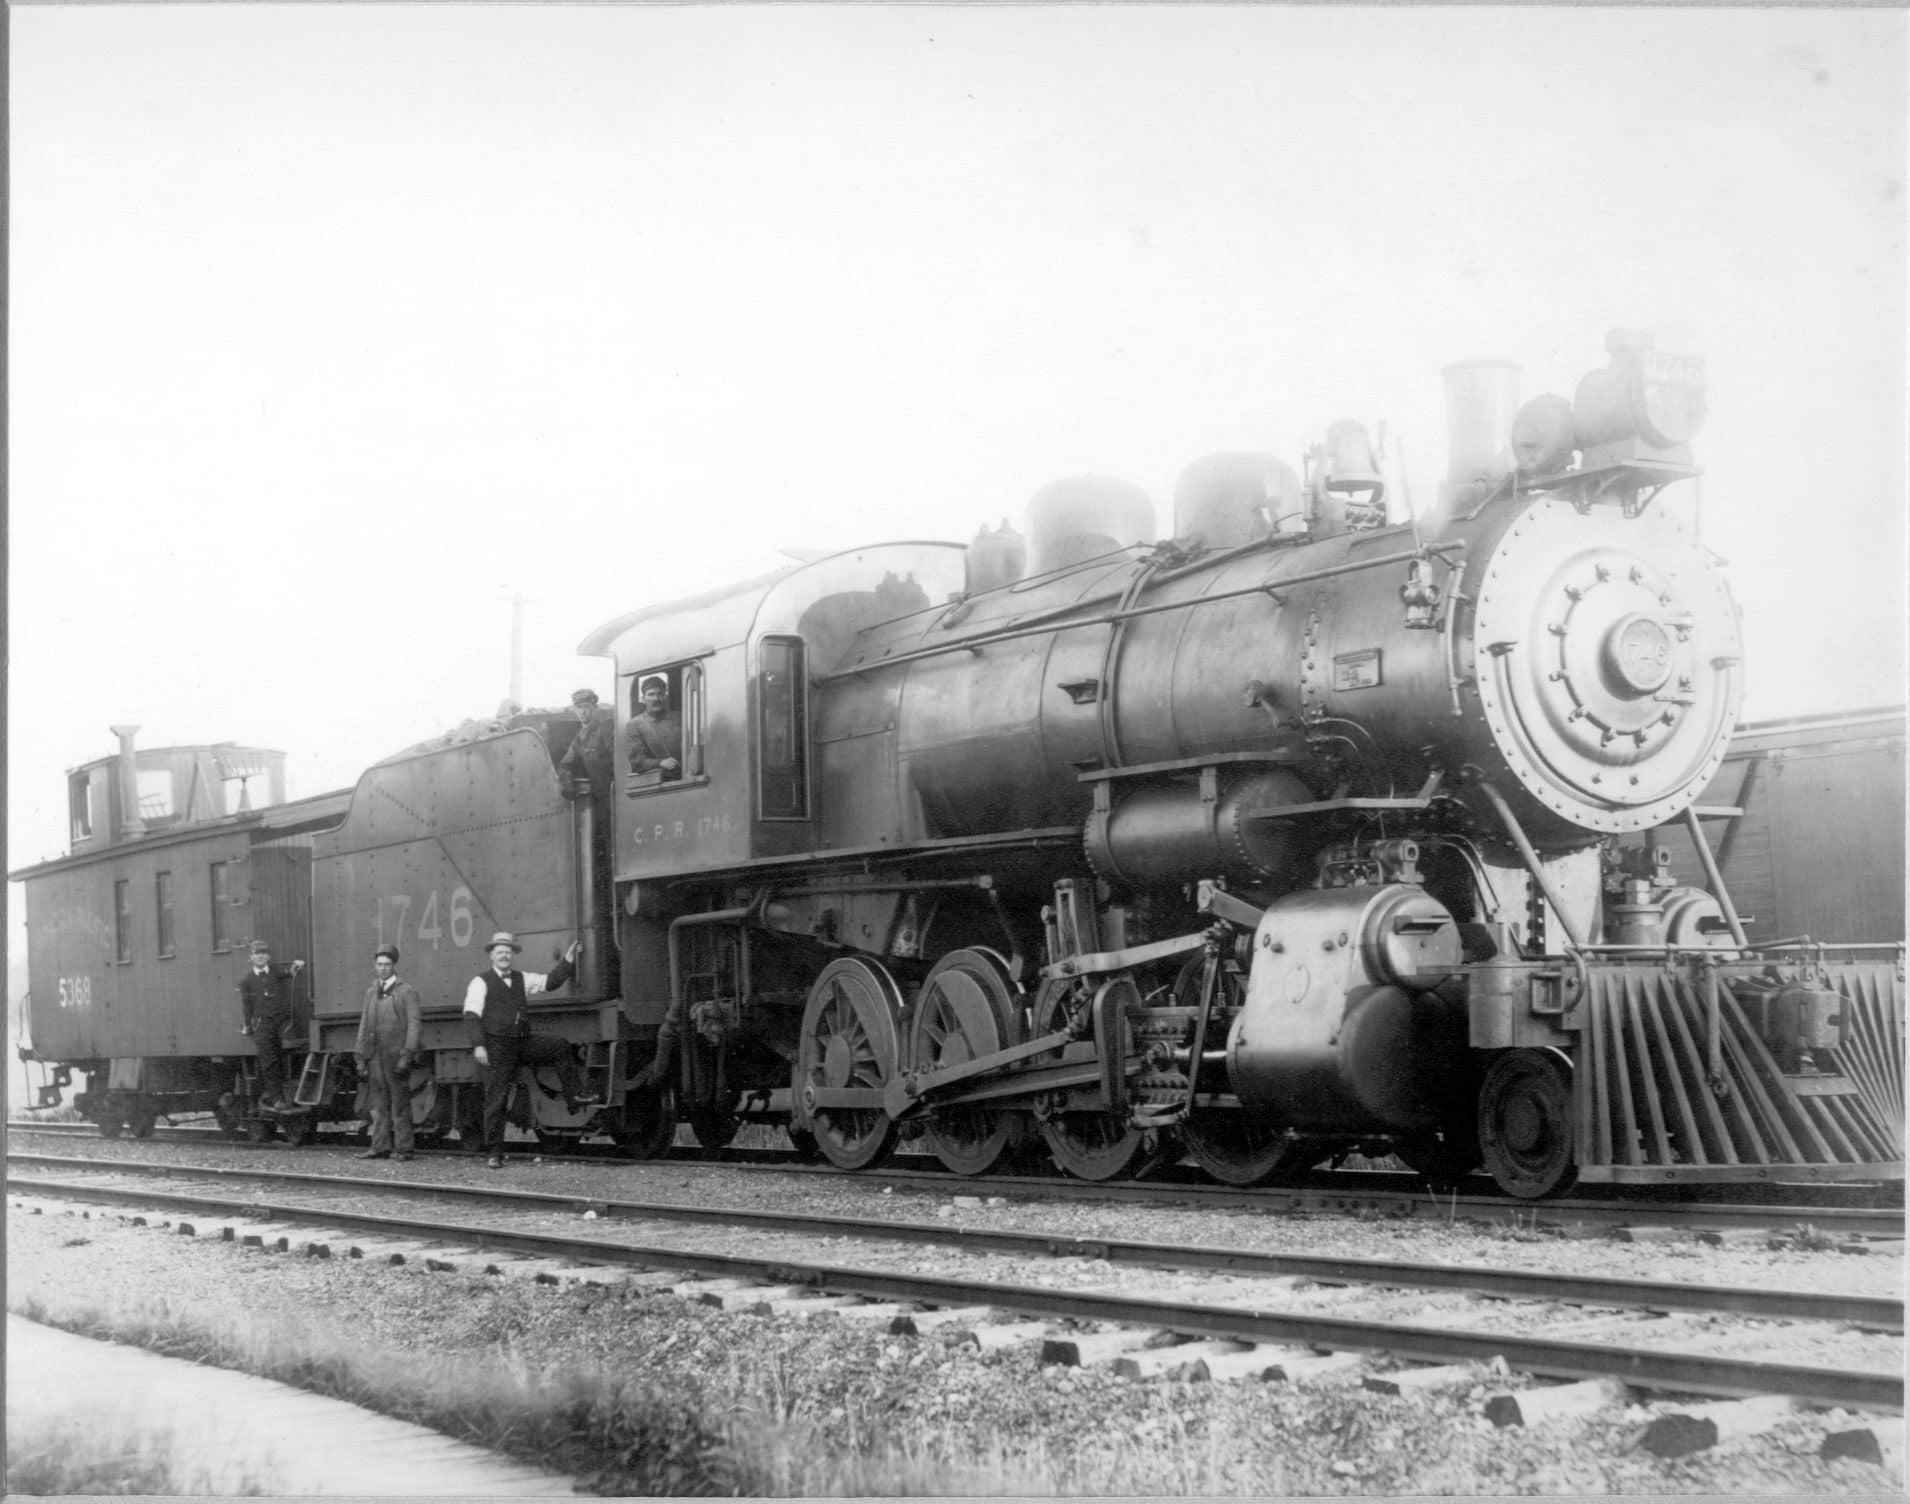 Train in Toronto area, 1920s